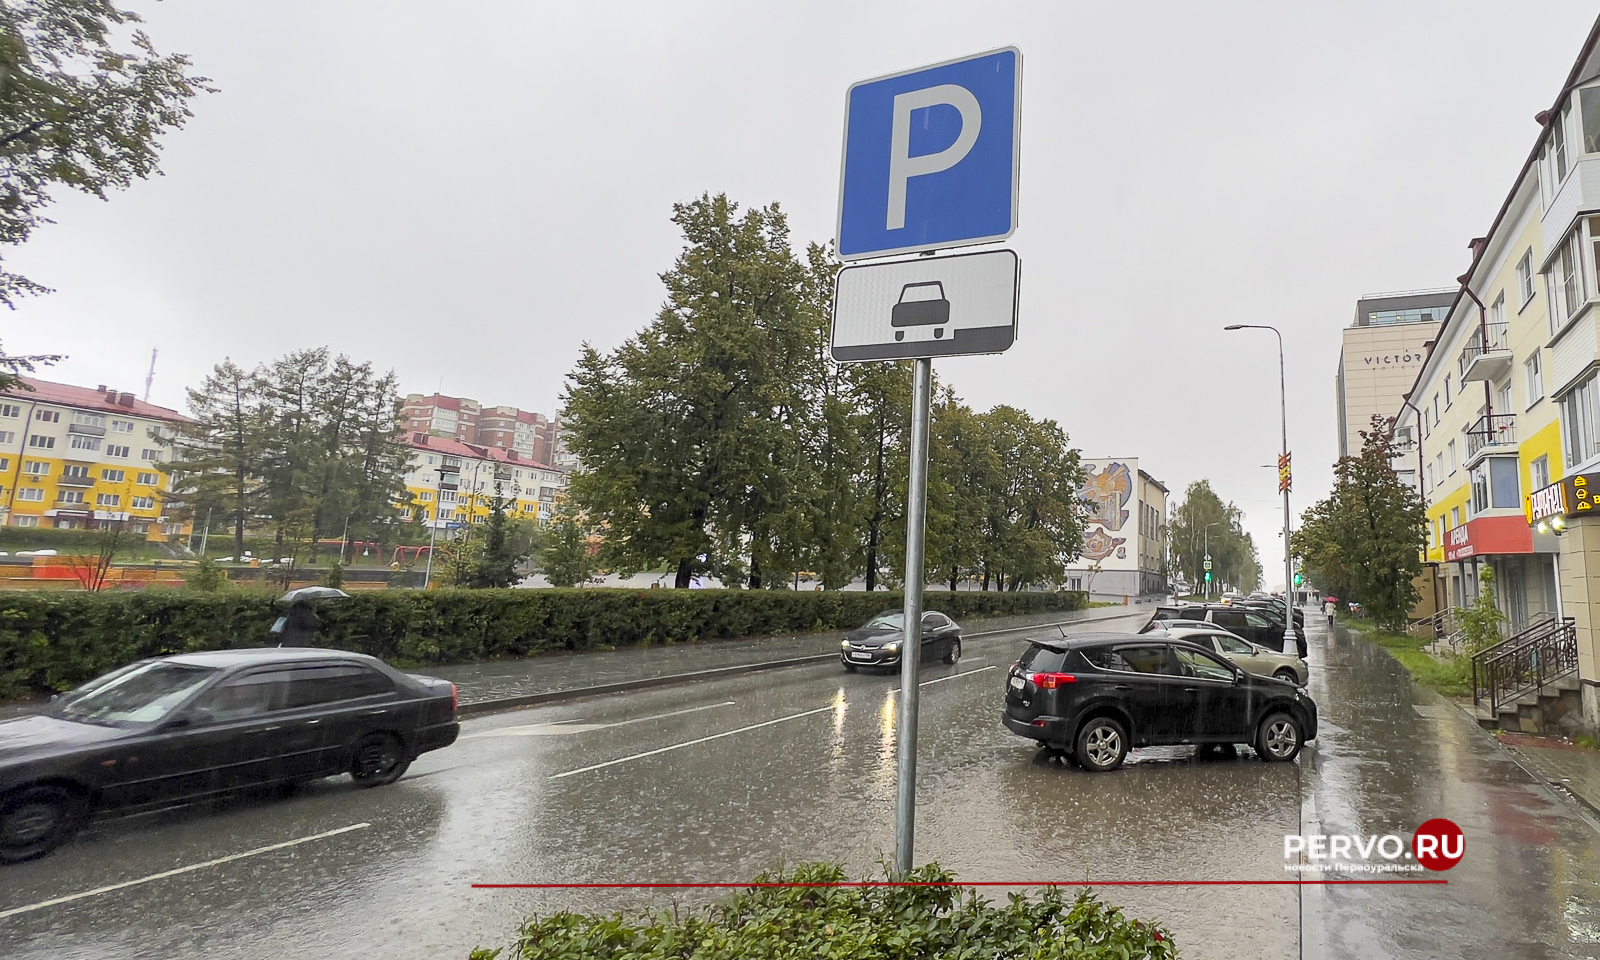 В центре города установили знаки «Параллельная парковка»